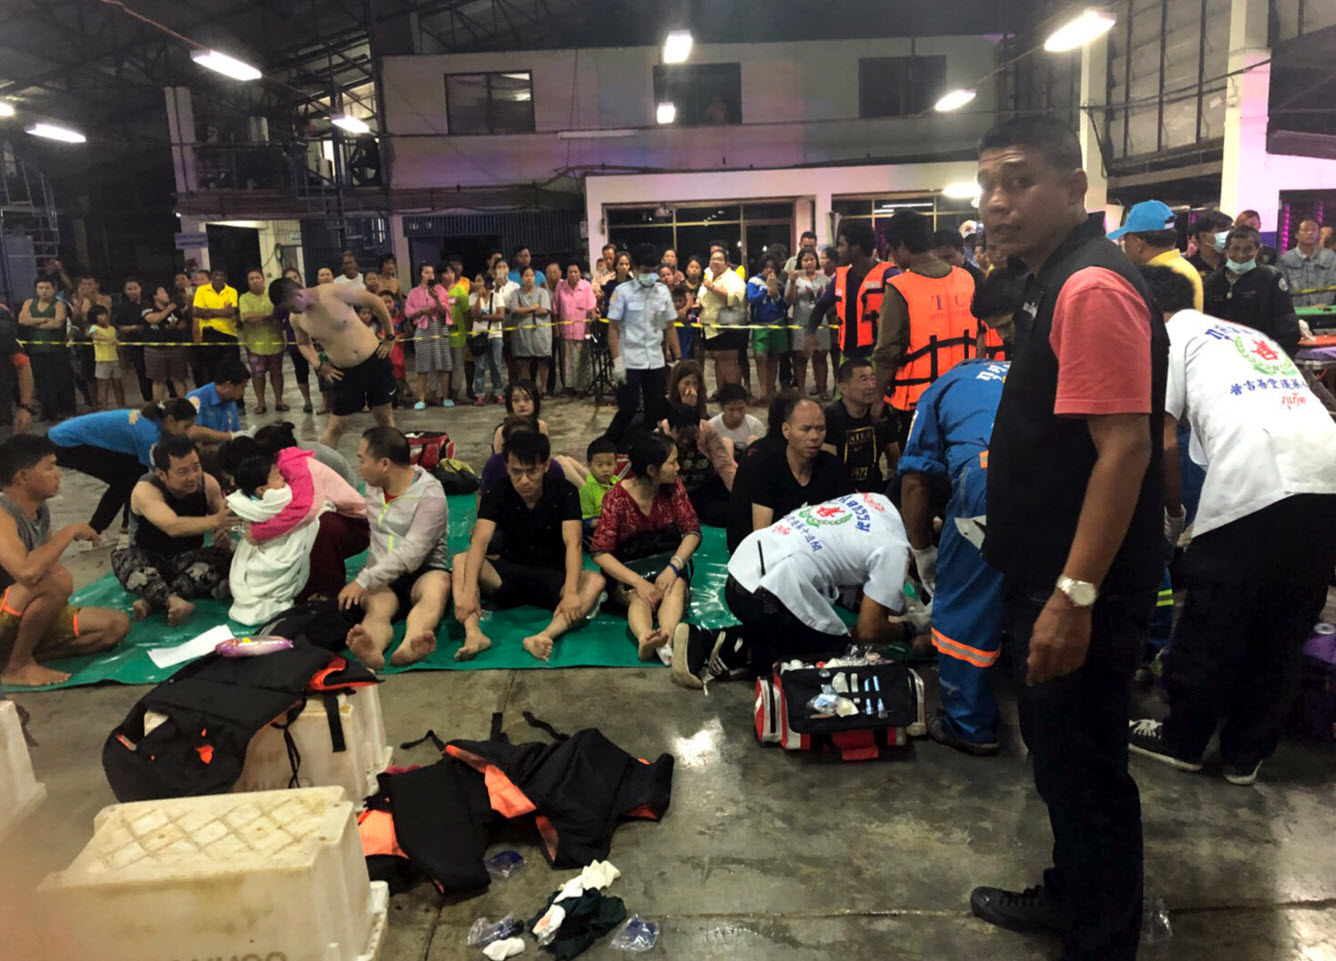 ทีมรักษาพยาบาลเข้าดูแลนักท่องเที่ยวจากเรือดังกล่าว (Image: Royal Thai Police)